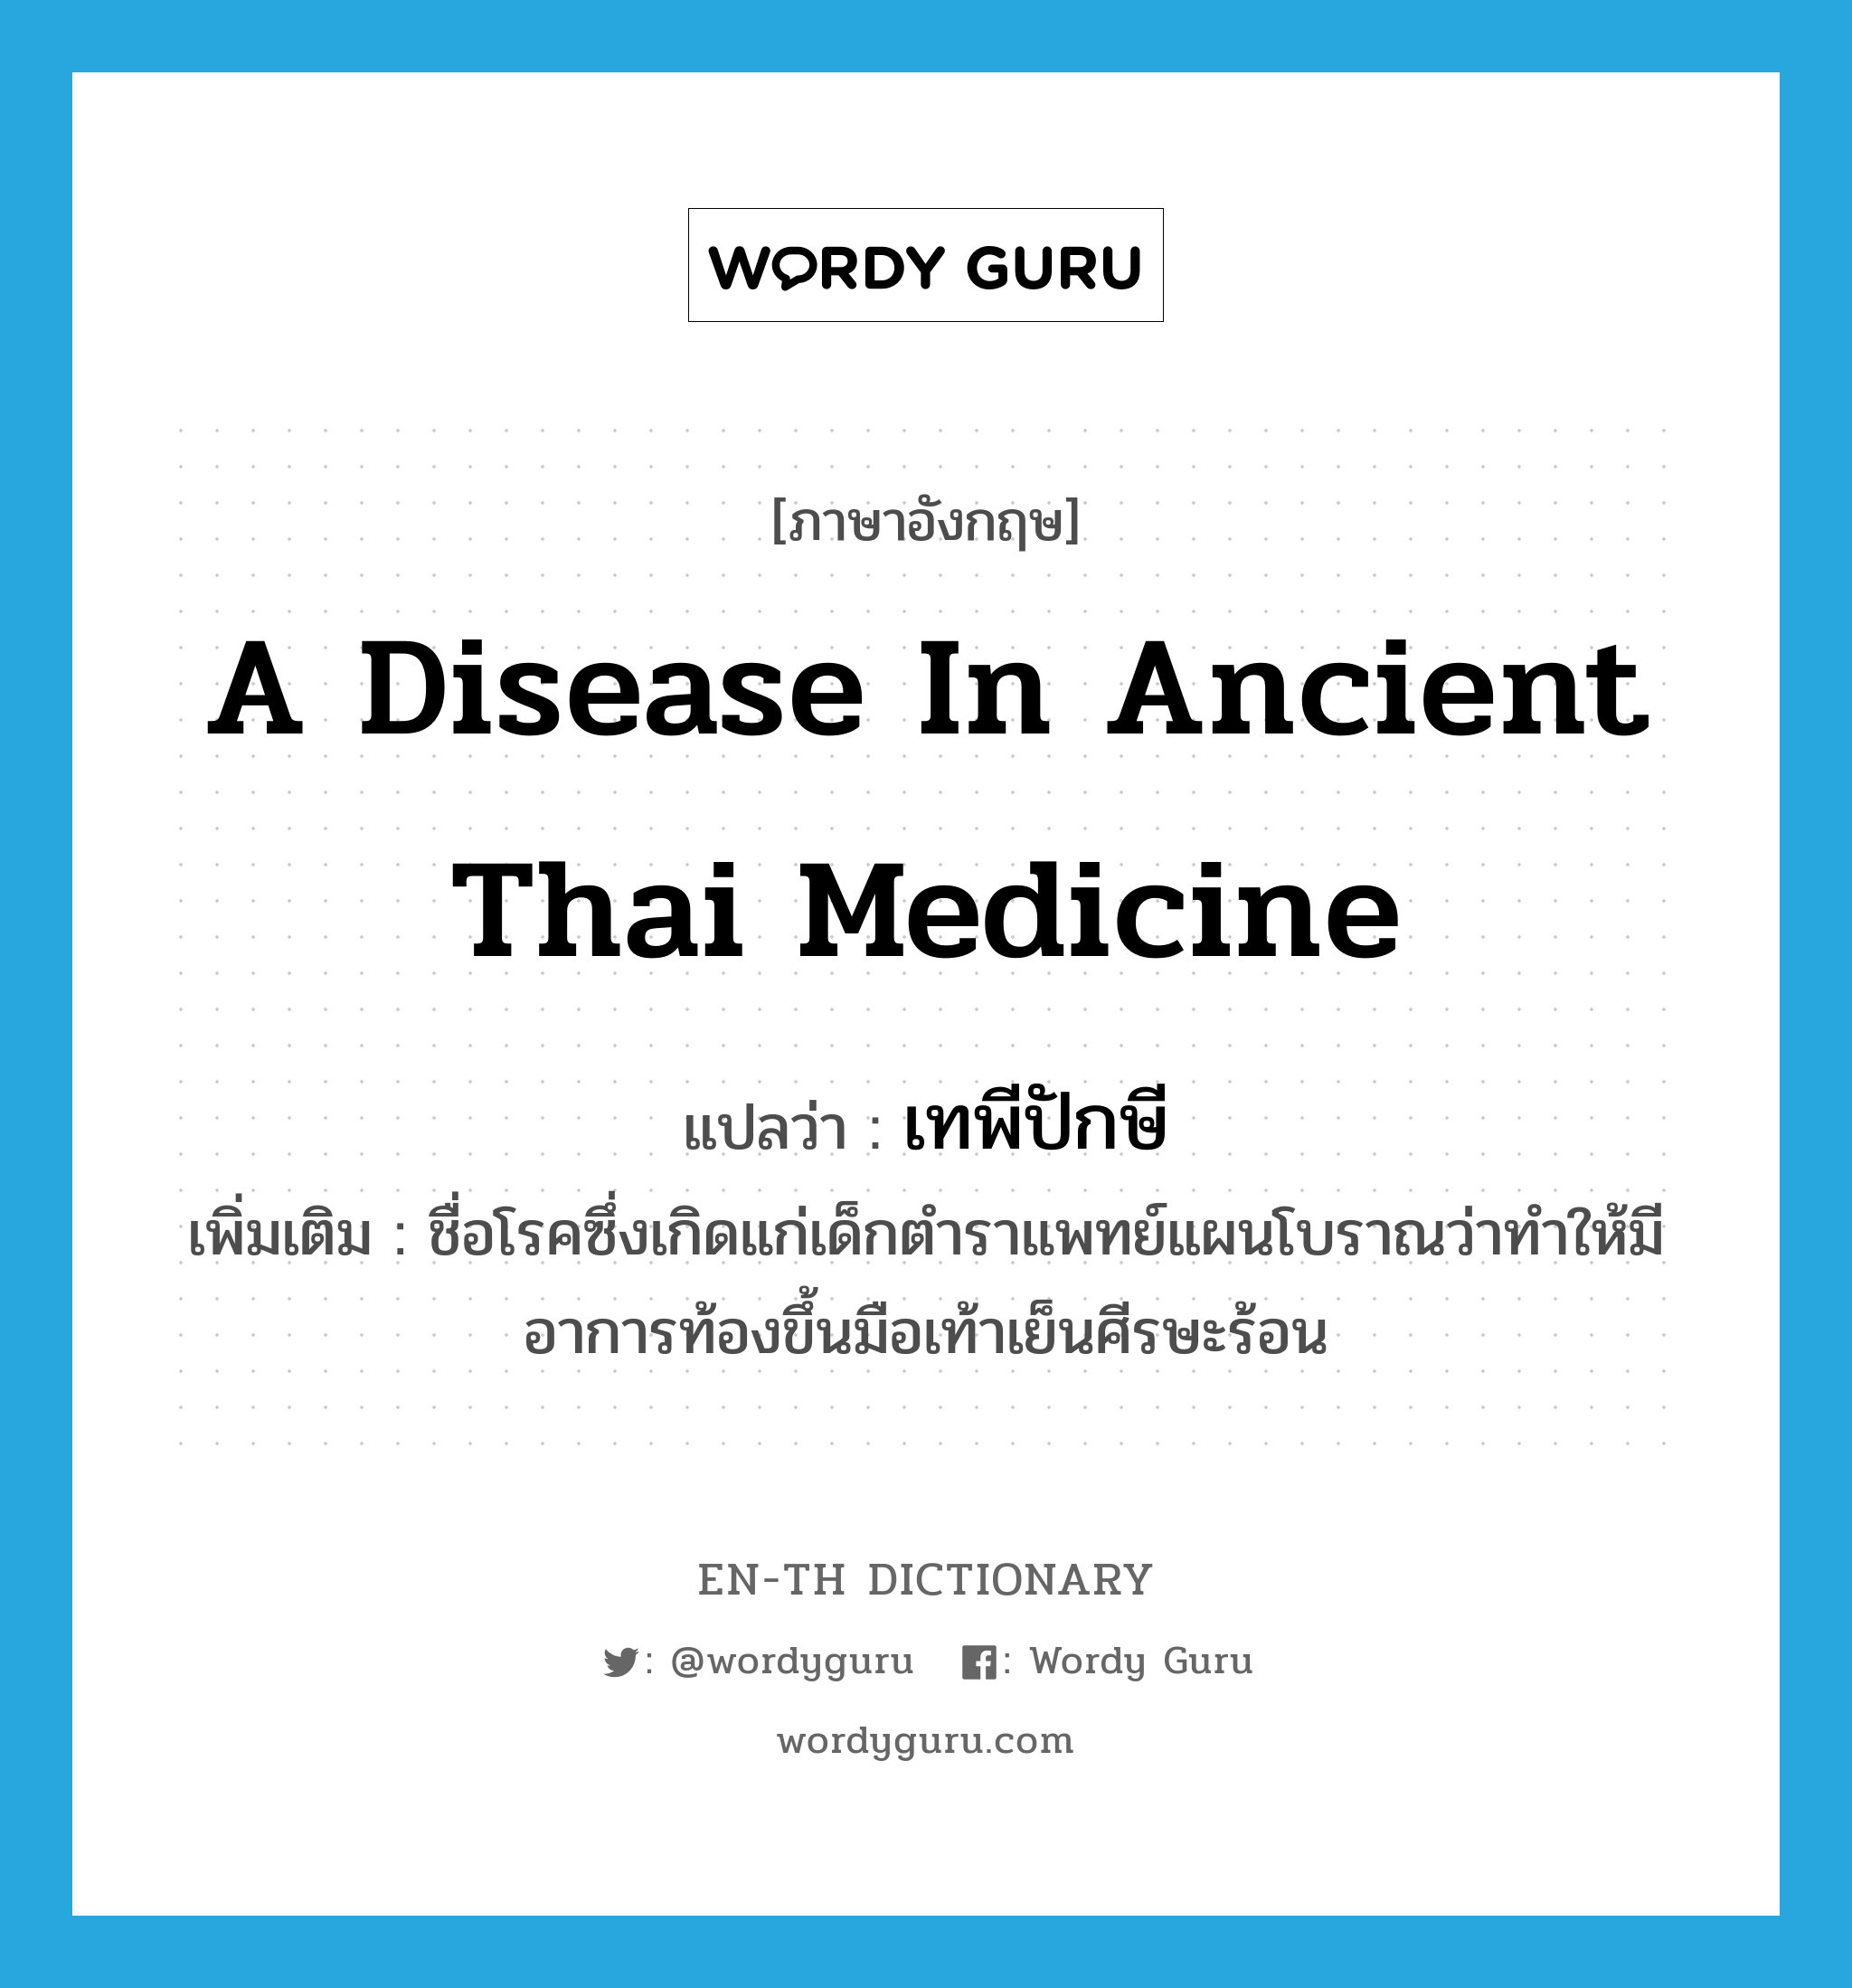 เทพีปักษี ภาษาอังกฤษ?, คำศัพท์ภาษาอังกฤษ เทพีปักษี แปลว่า a disease in ancient Thai medicine ประเภท N เพิ่มเติม ชื่อโรคซึ่งเกิดแก่เด็กตำราแพทย์แผนโบราณว่าทำให้มีอาการท้องขึ้นมือเท้าเย็นศีรษะร้อน หมวด N